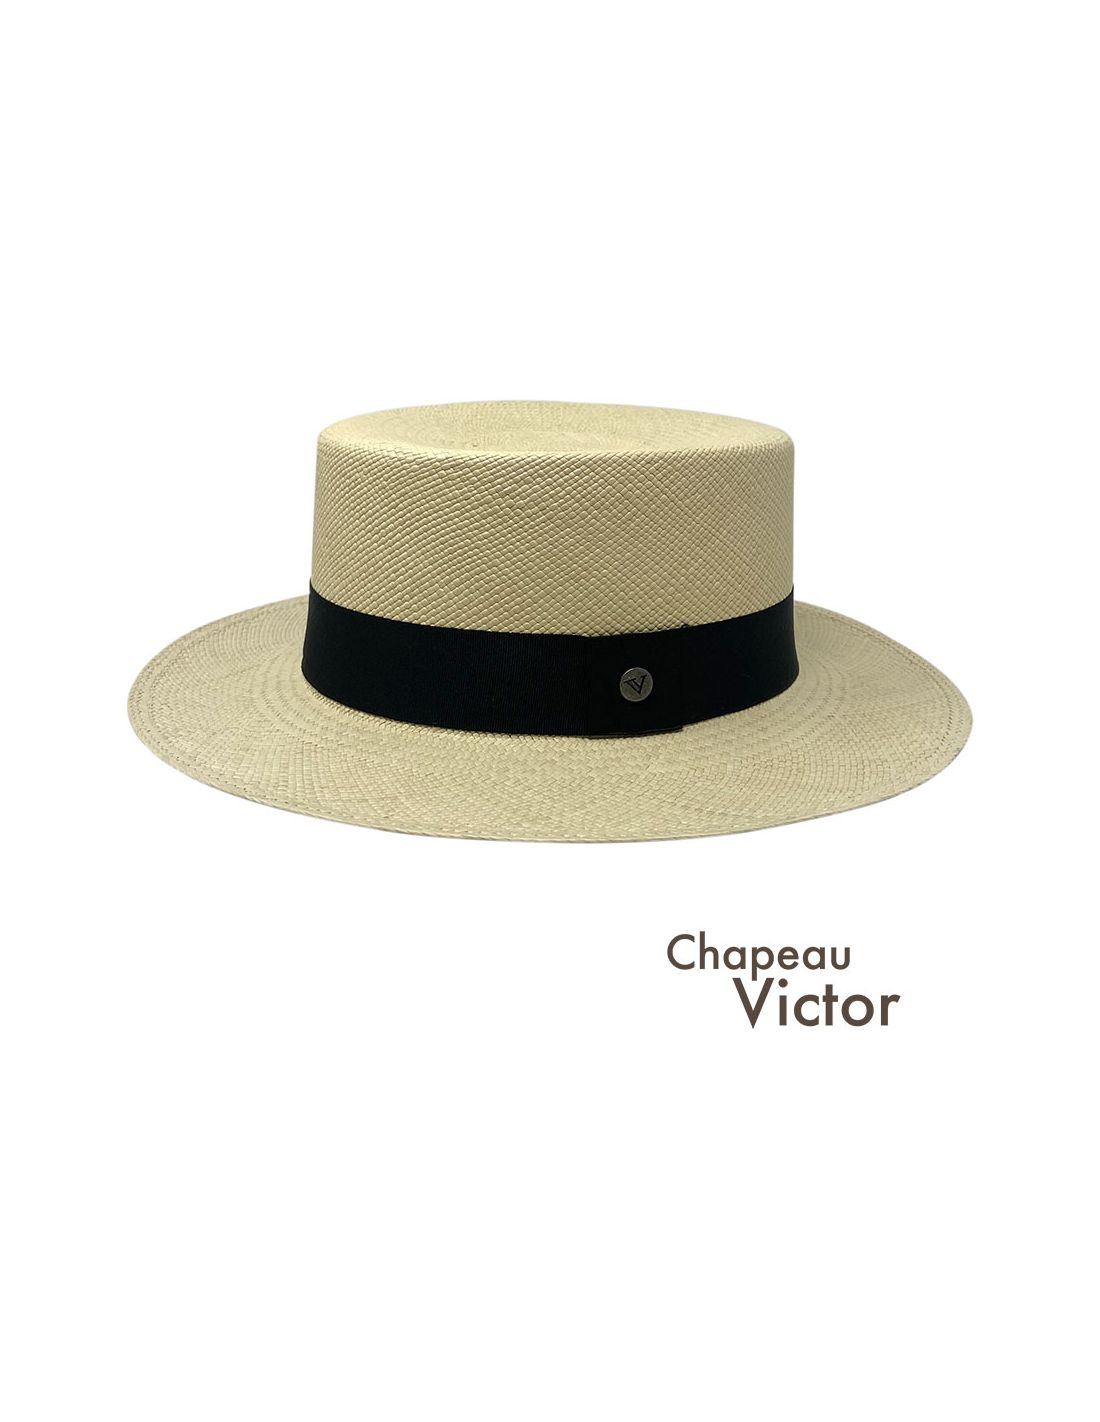 Votre Chapeau Homme Style Canotier : 100% Élégance et Qualité en